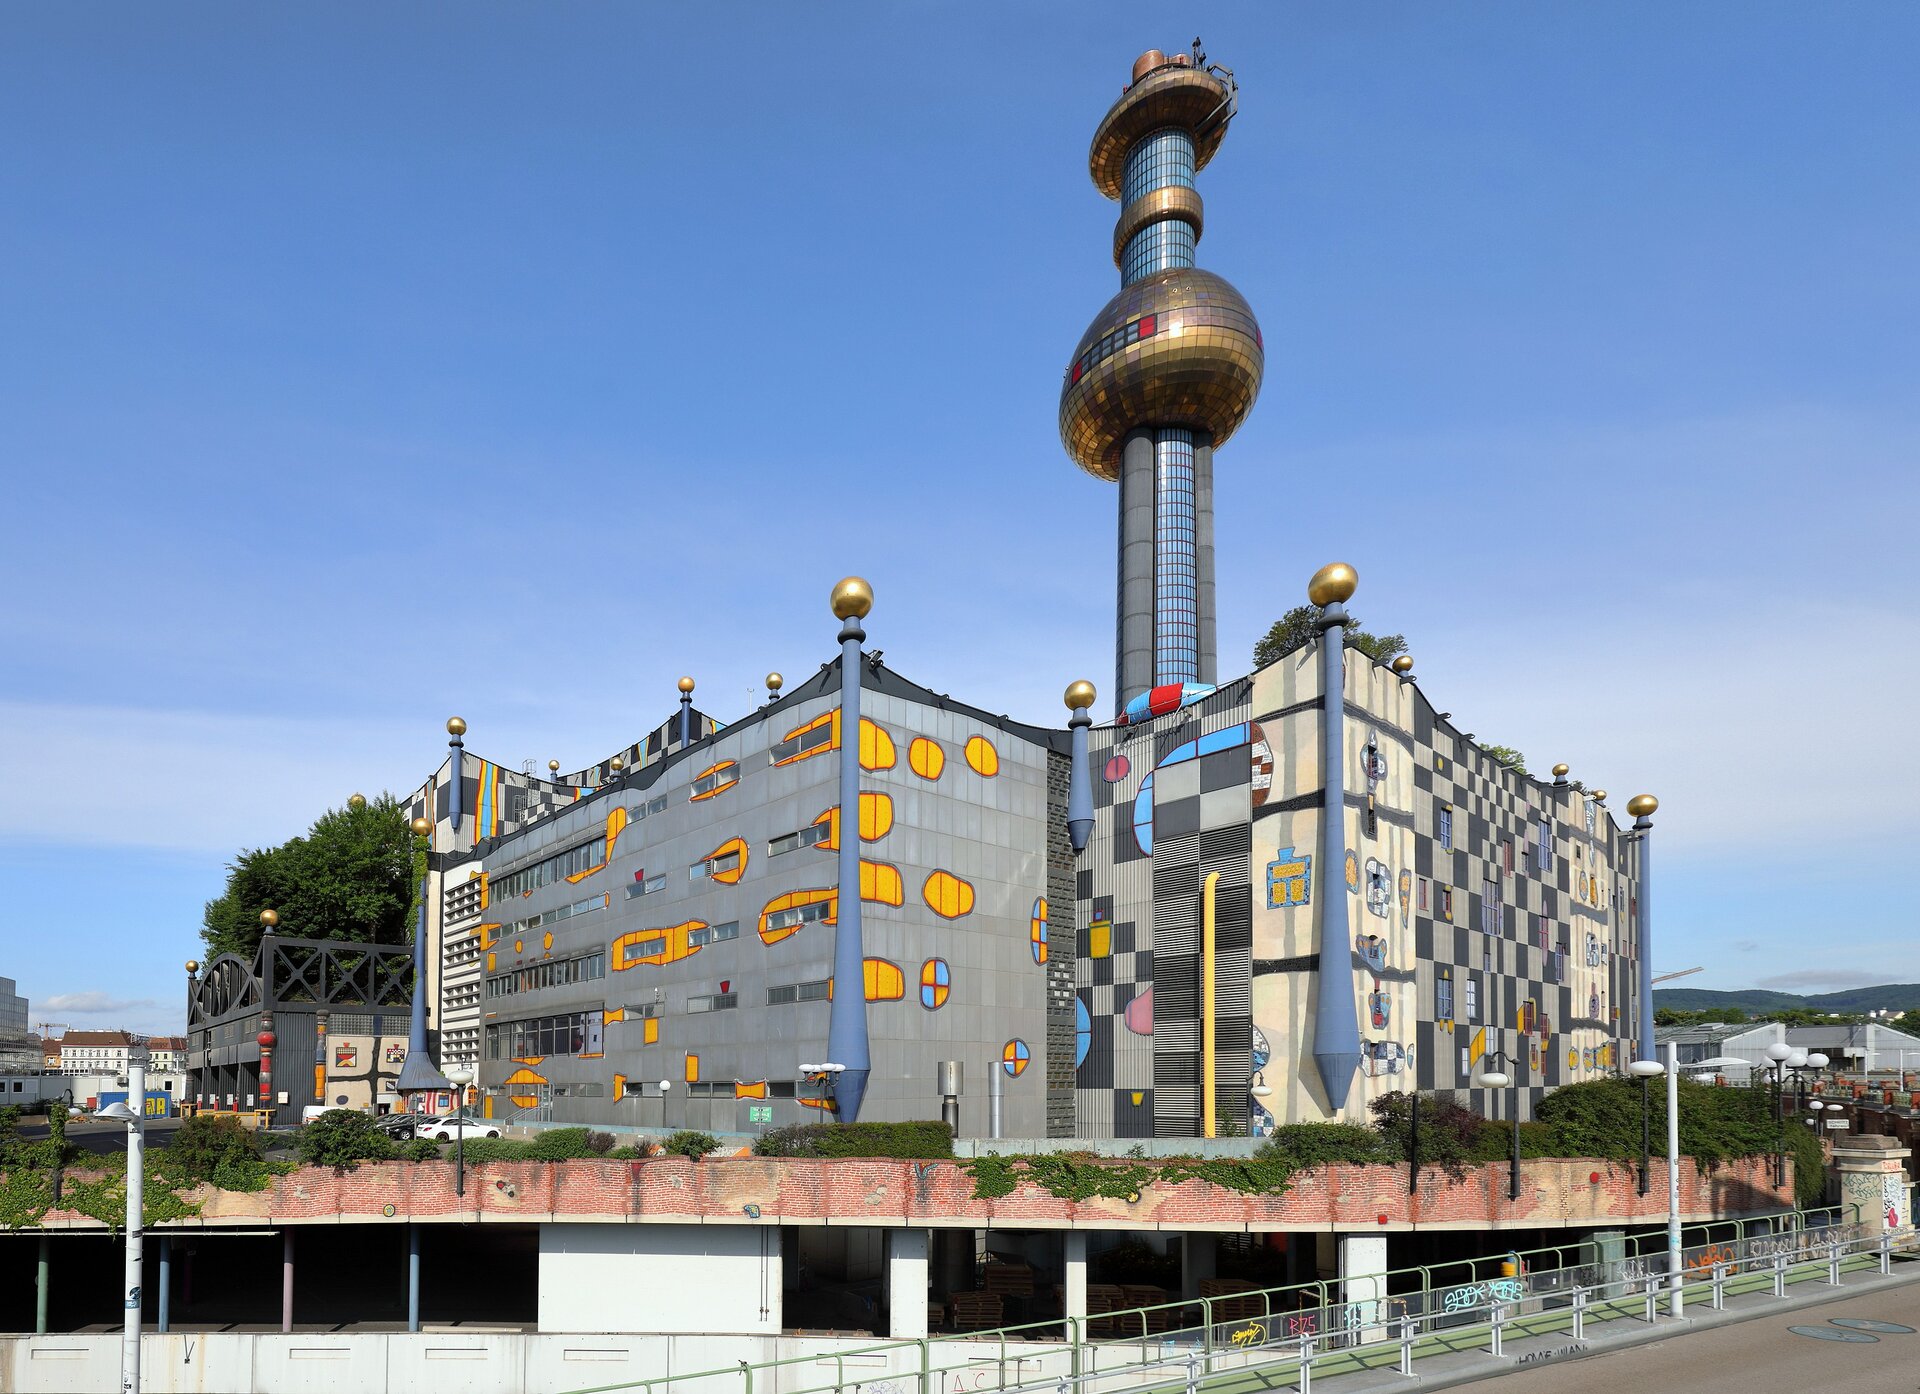 Zdjęcie przedstawia spalarnię Spittelau w Wiedniu. Budynek ma futurystyczny kształt. W rogach prostokątnego budynku znajdują się szare kolumny rozszerzające się do dołu, zwieńczone u góry złotymi kulami. Na fasadzie w kolorze szarym znajdują się nieregularne, pomarańczowe i niebieskie plamy oraz inne fantazyjne kształty oraz szaro – czarna szachownica. Nad budynkiem góruje srebrna wieża ze złotą kulą w połowie wysokości, złotą obręczą w 3/4 wysokości oraz płaską platformą na szczycie. 